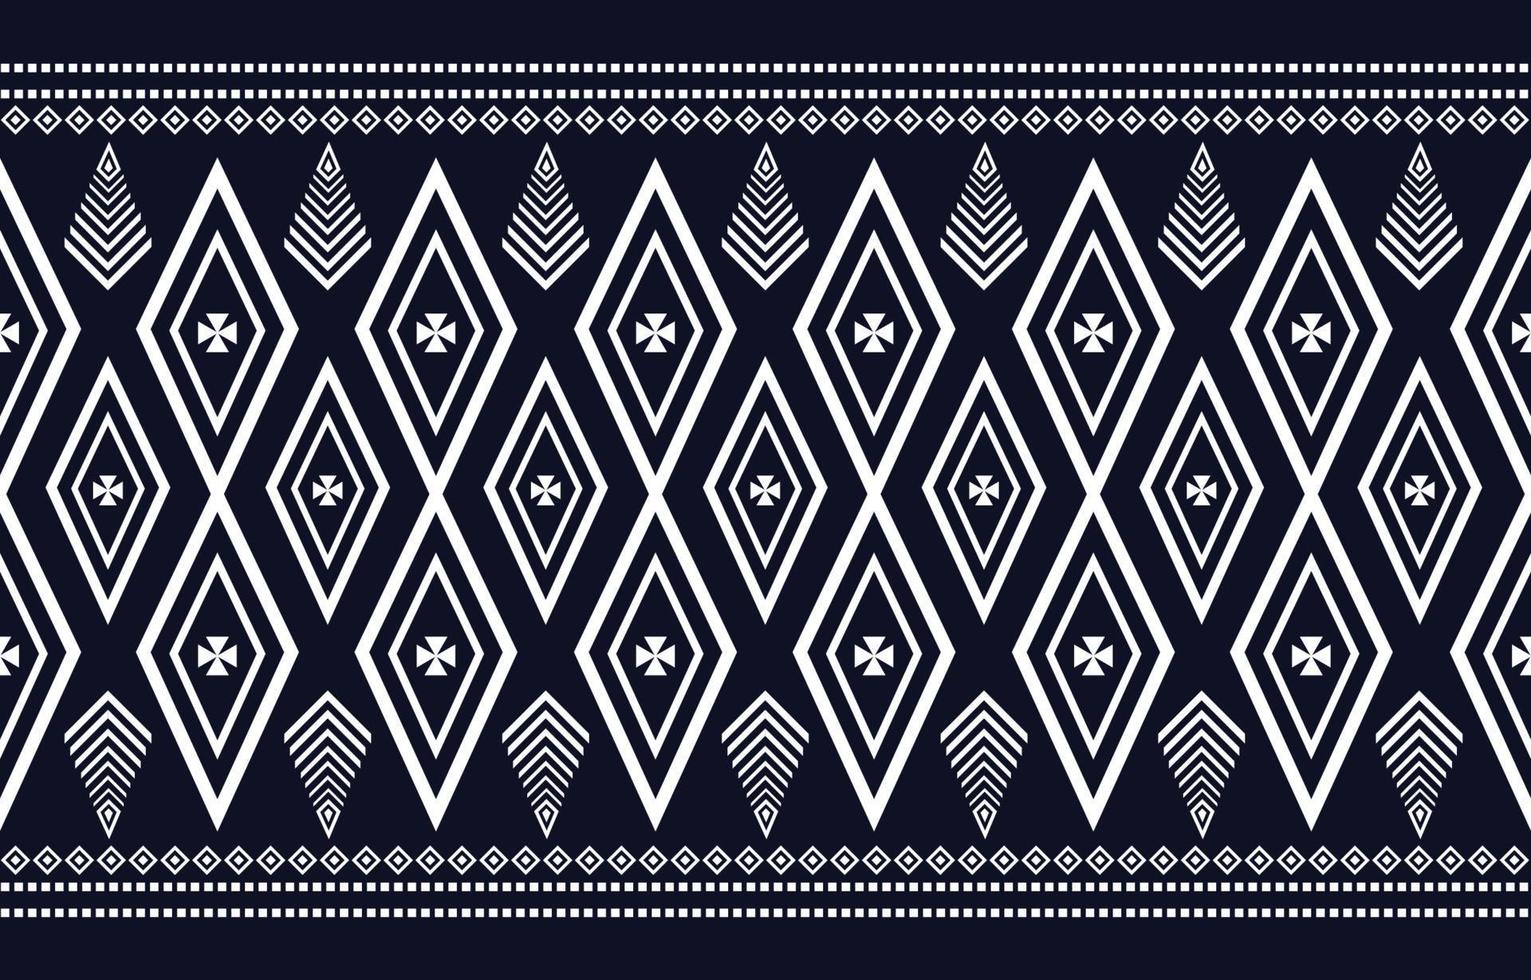 etnisch geometrisch patroon voor achtergrond of tapijt, behang, omslag, batik, inheems patroongordijnenontwerp. vector illustratie